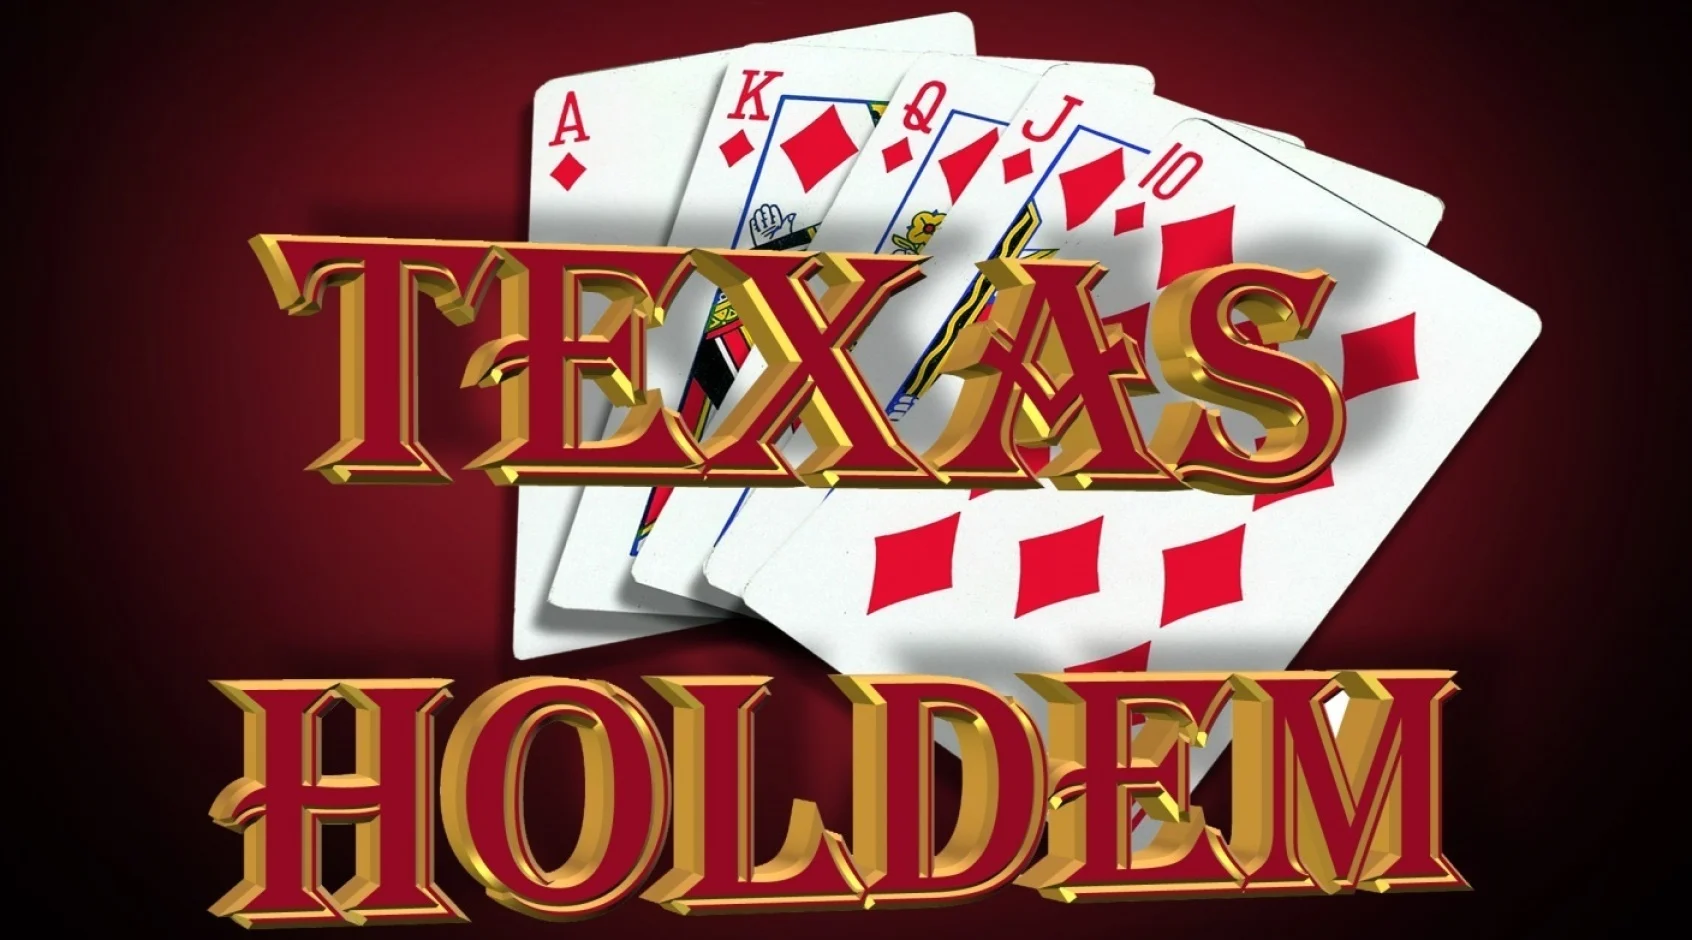 Texas holdem poker